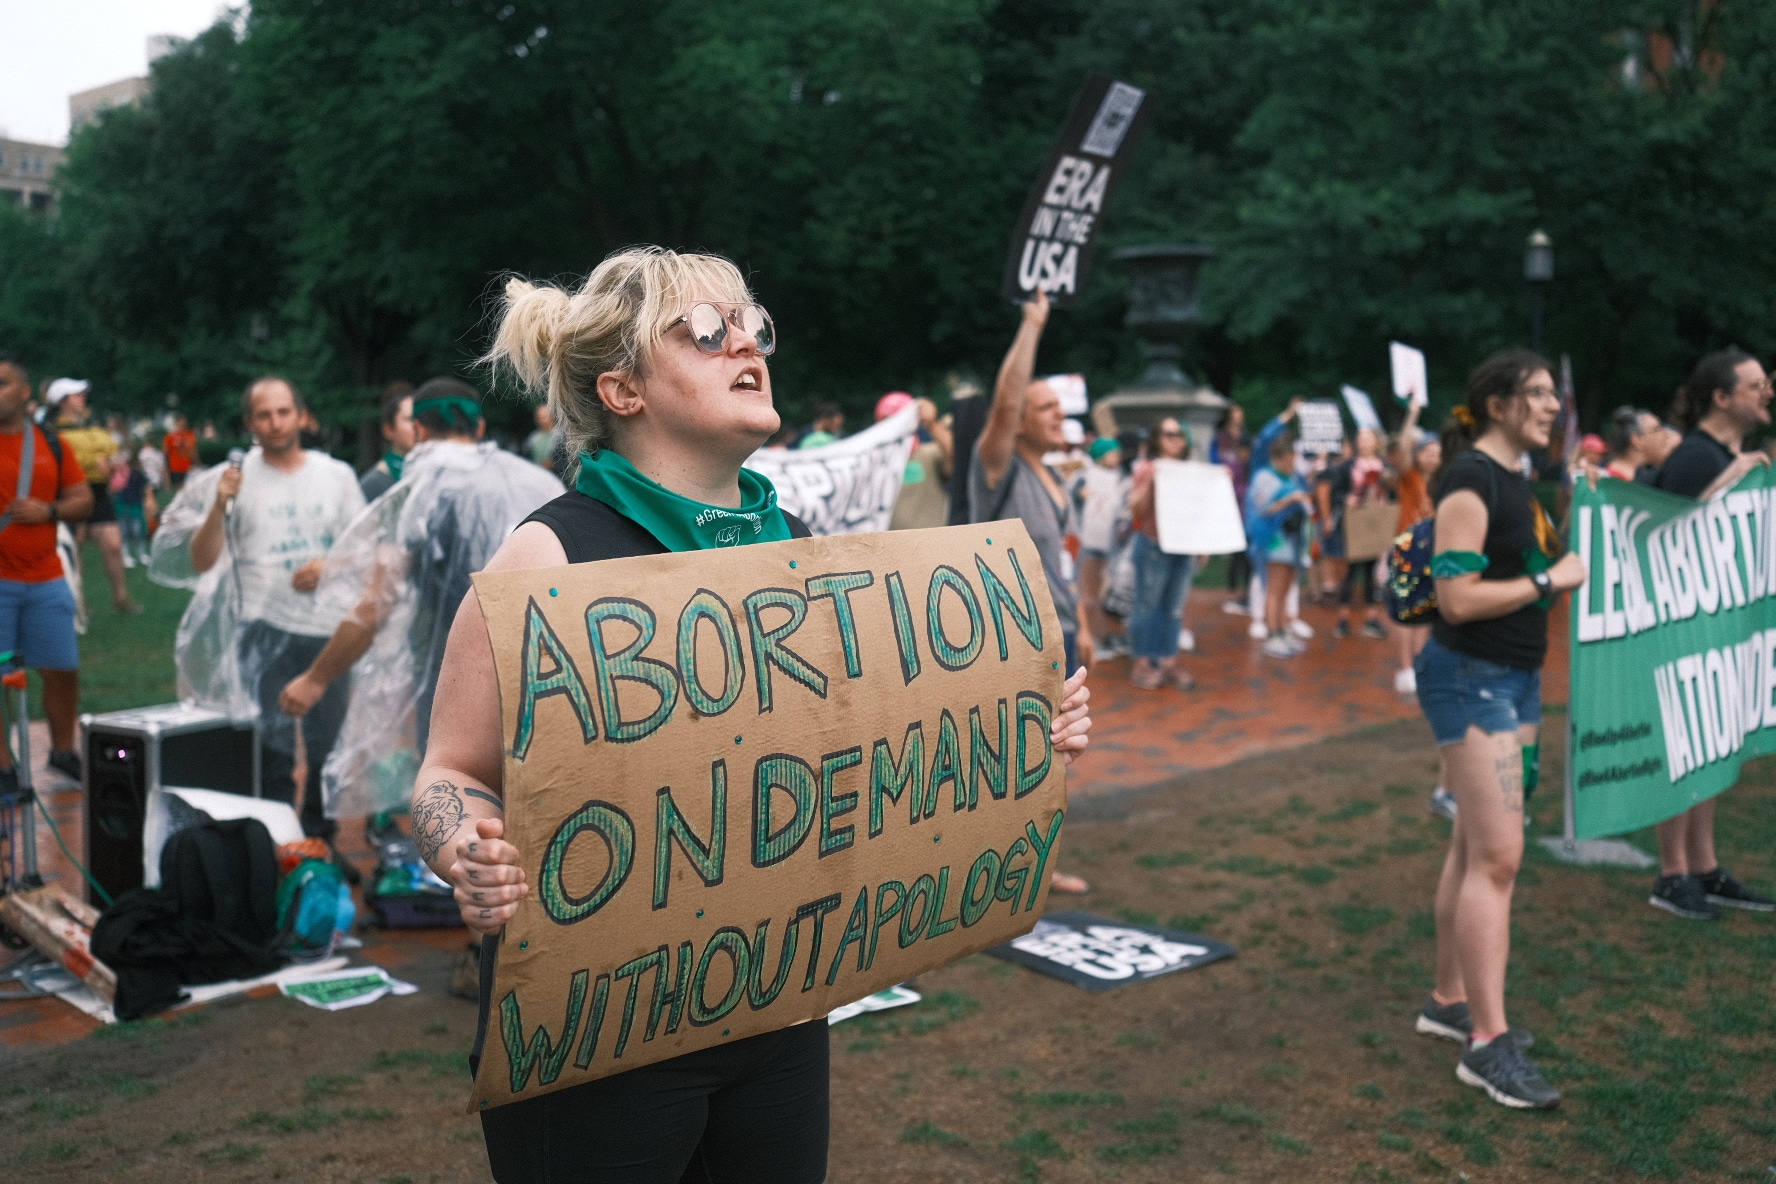 Personas protestan hoy frente a la Casa Blanca para exigir que se proteja el aborto legal, en Washington (EE.UU).